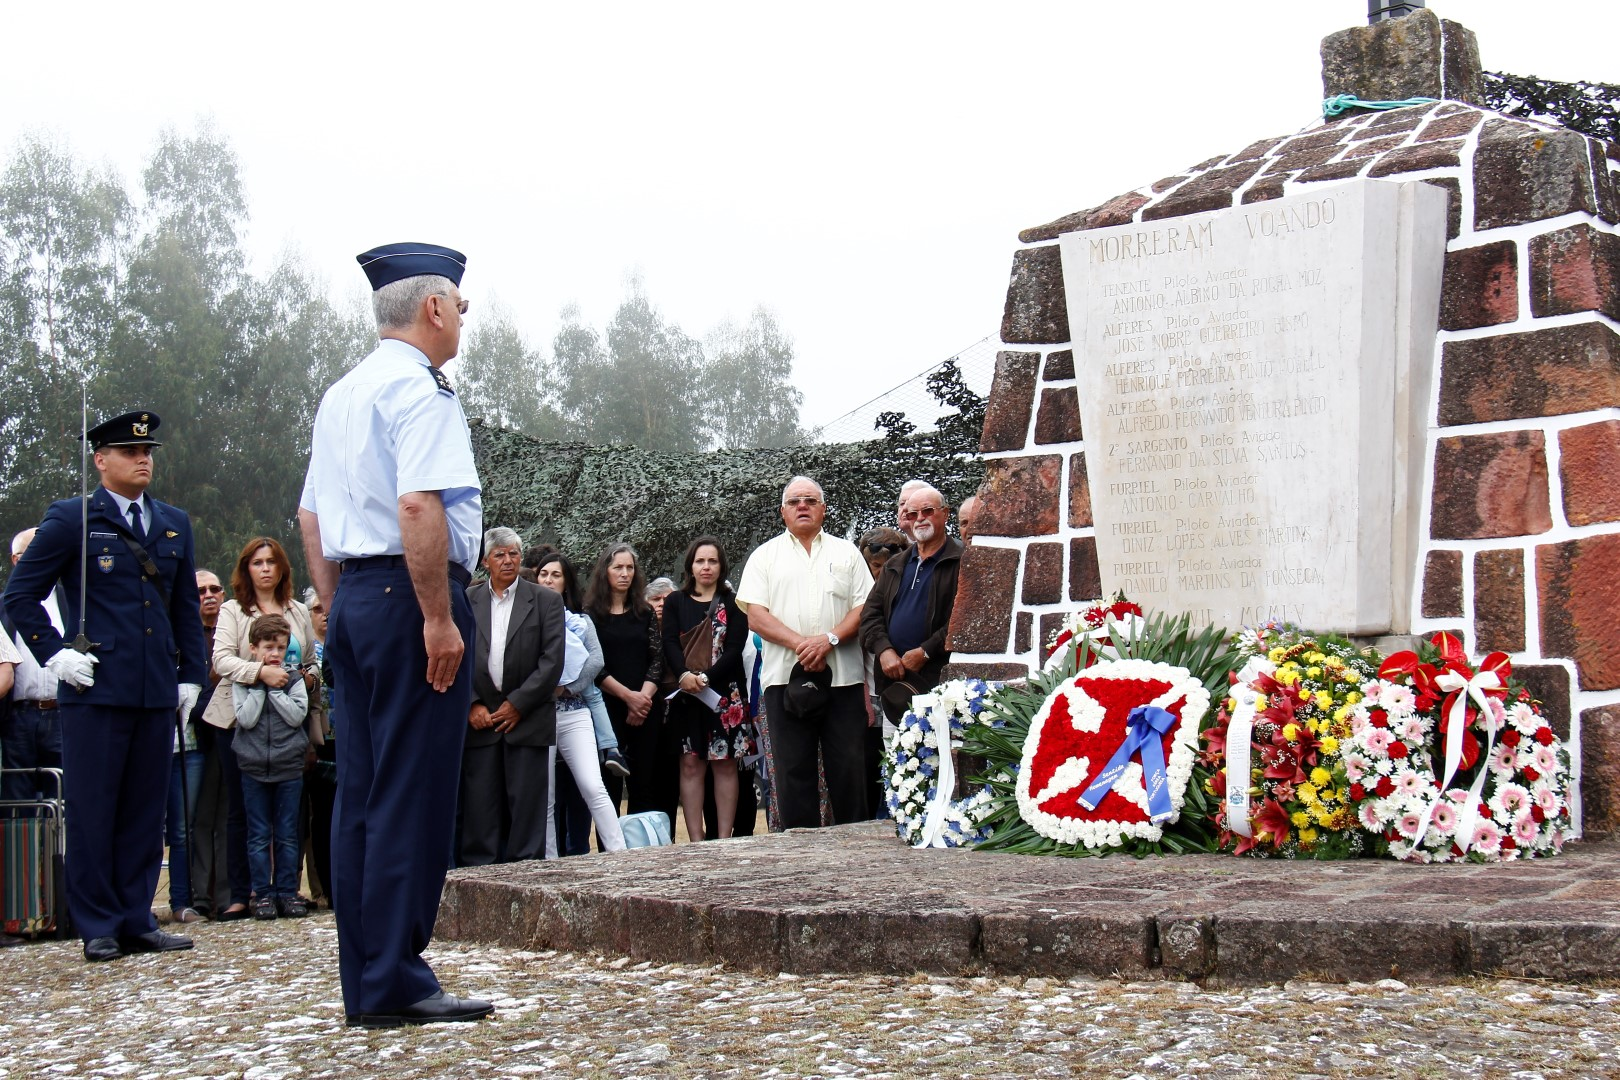 Memória - Há 62 anos queda de 8 aviões F-84G na Serra do Carvalho